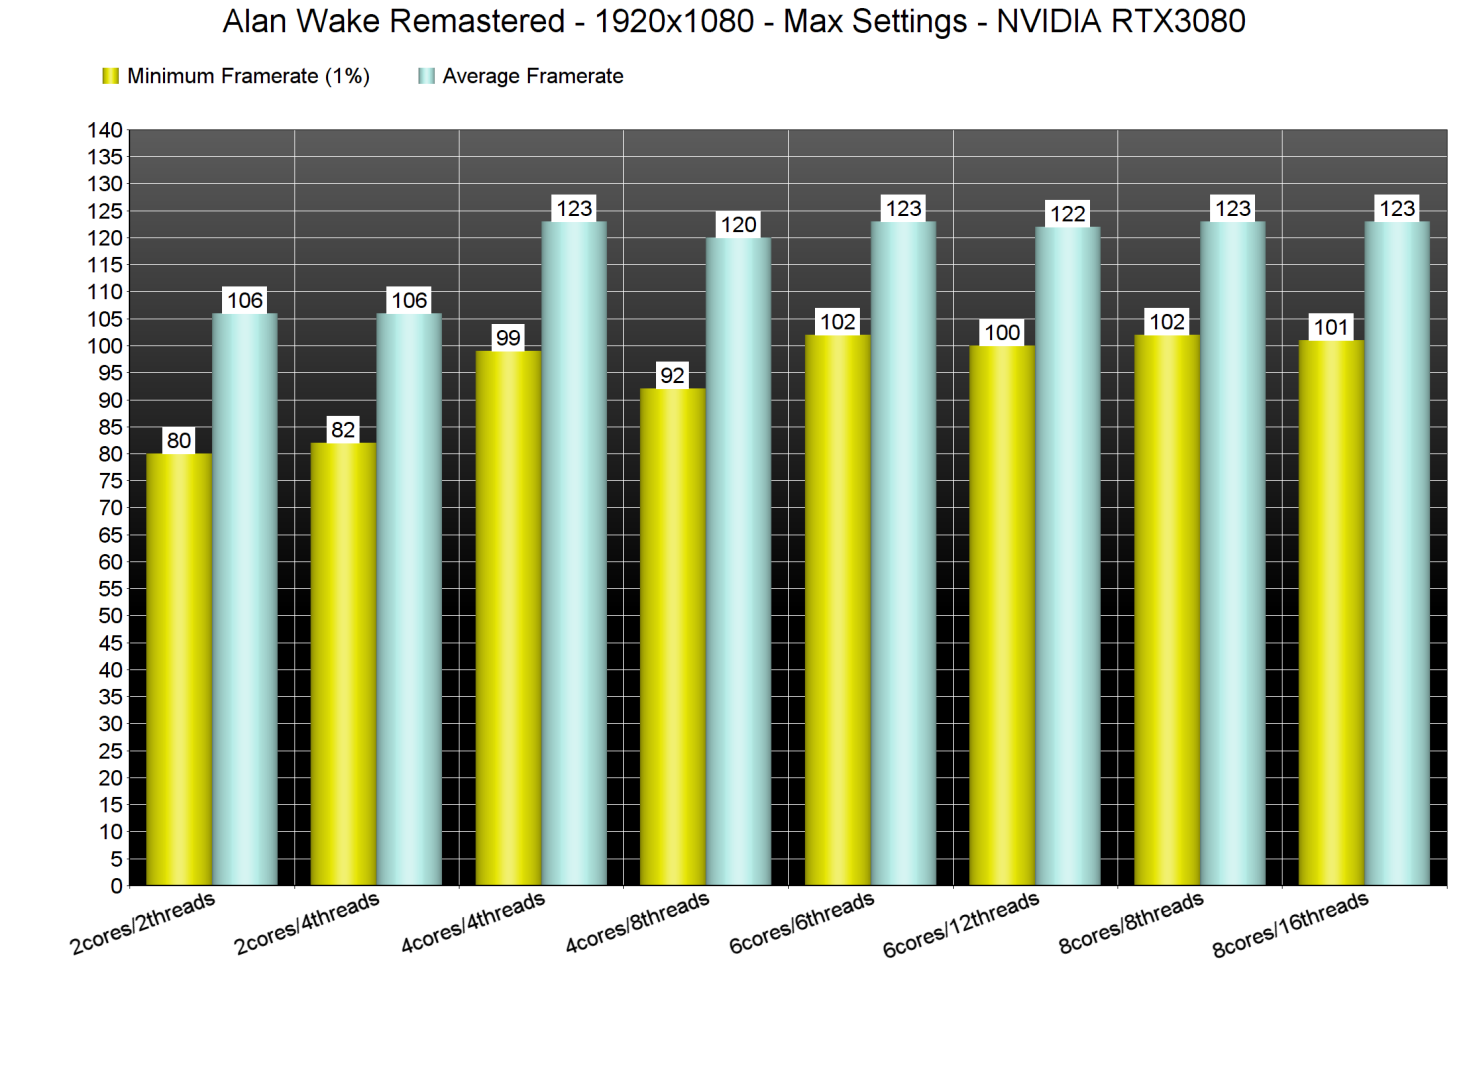 Alan Wake Remastered CPU benchmarks